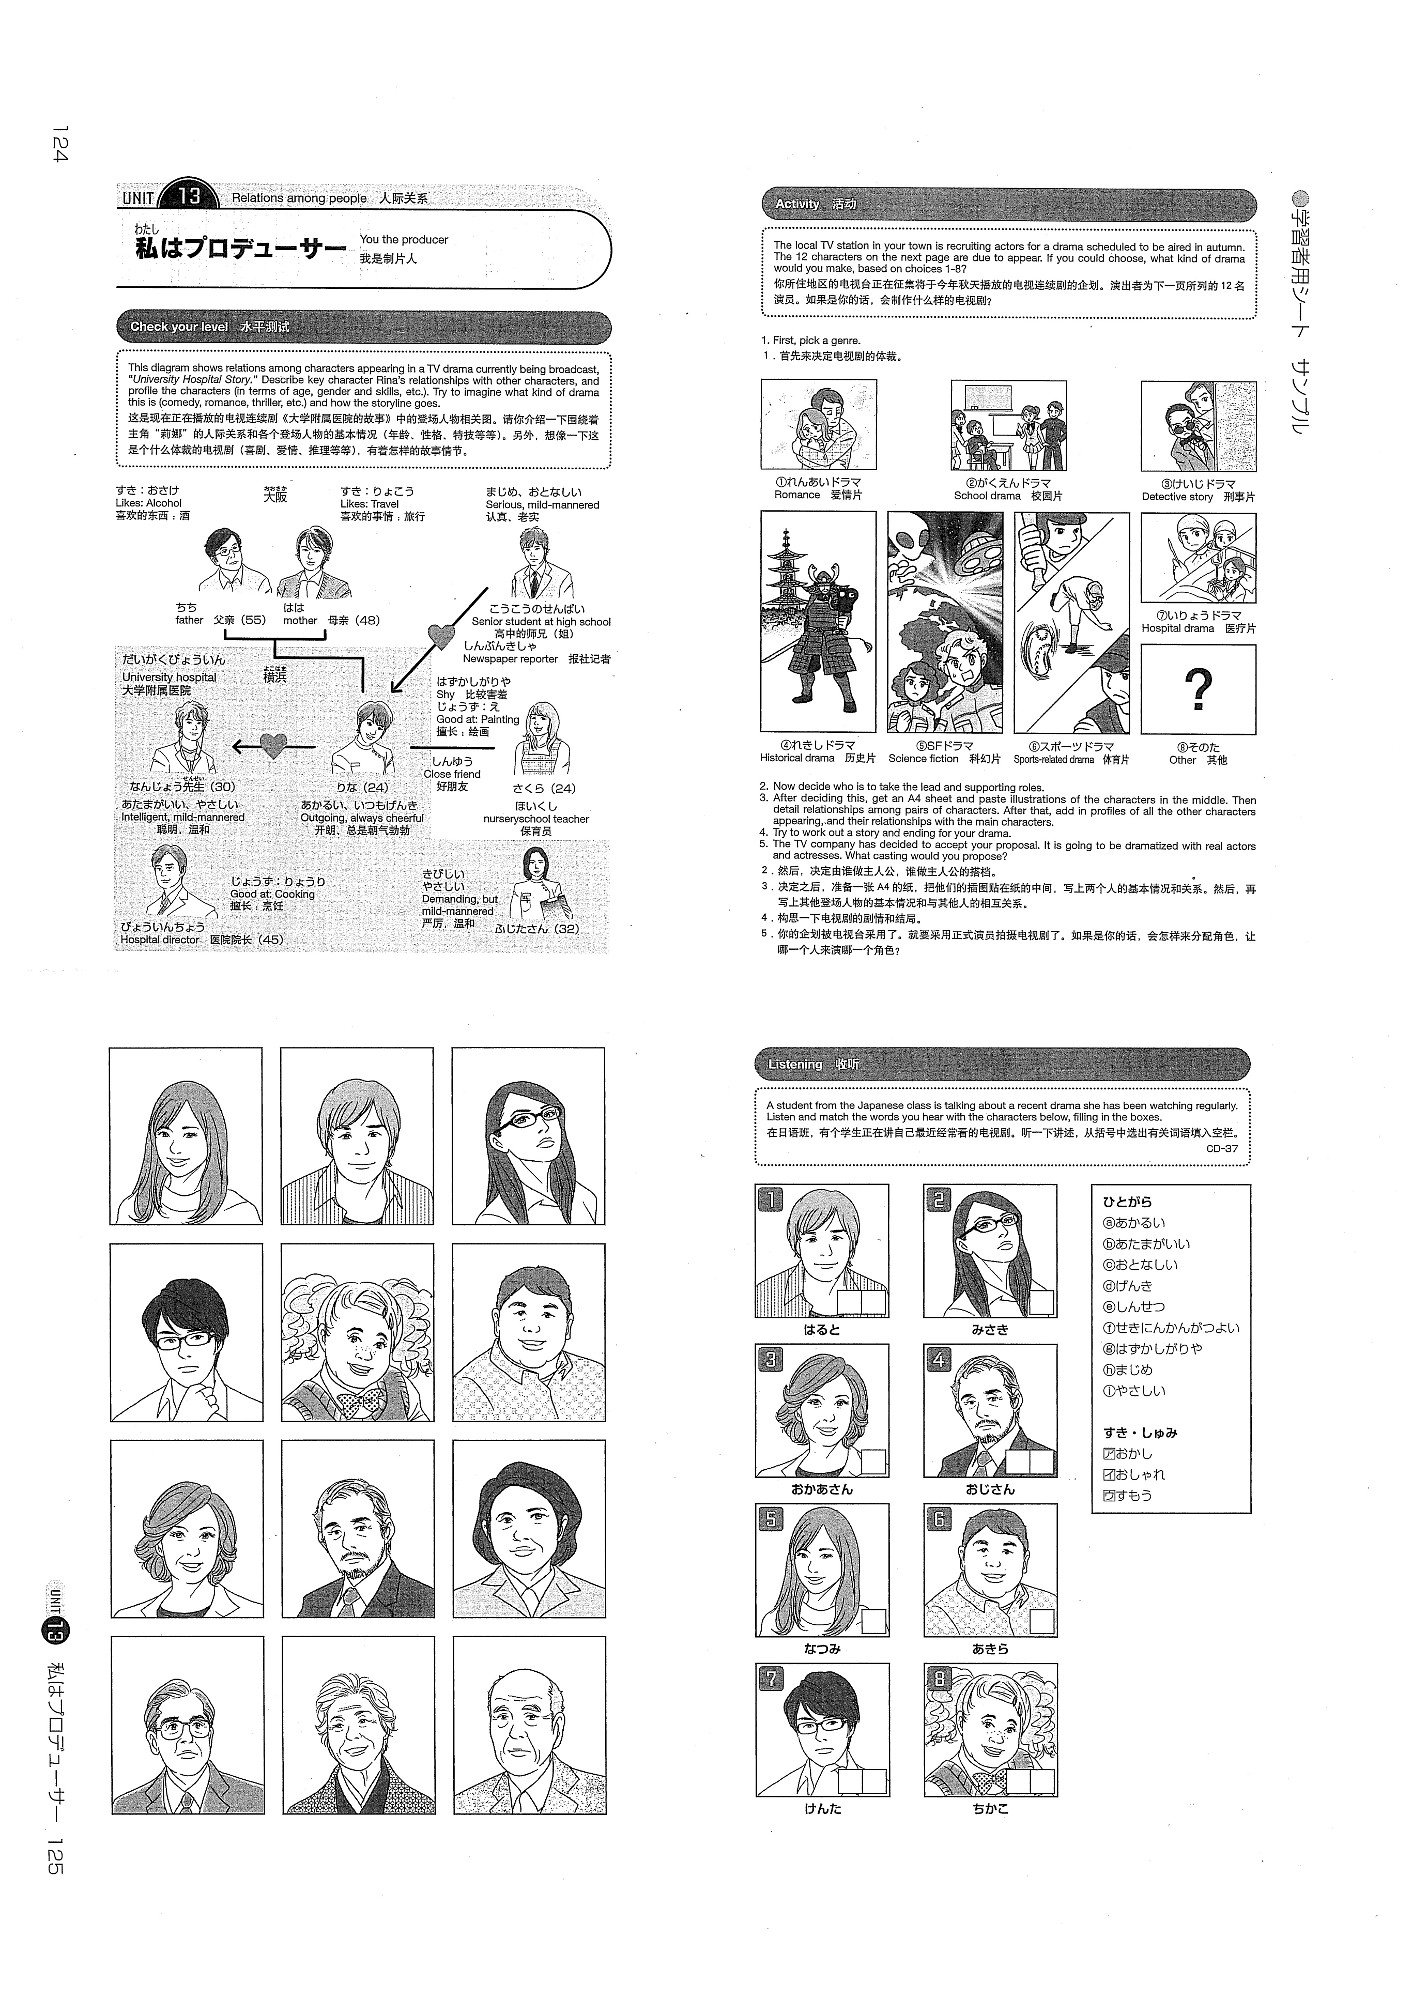 国際交流基金 日本語教育通信 本ばこ イラスト満載 日本語教師のための活動アイディアブック